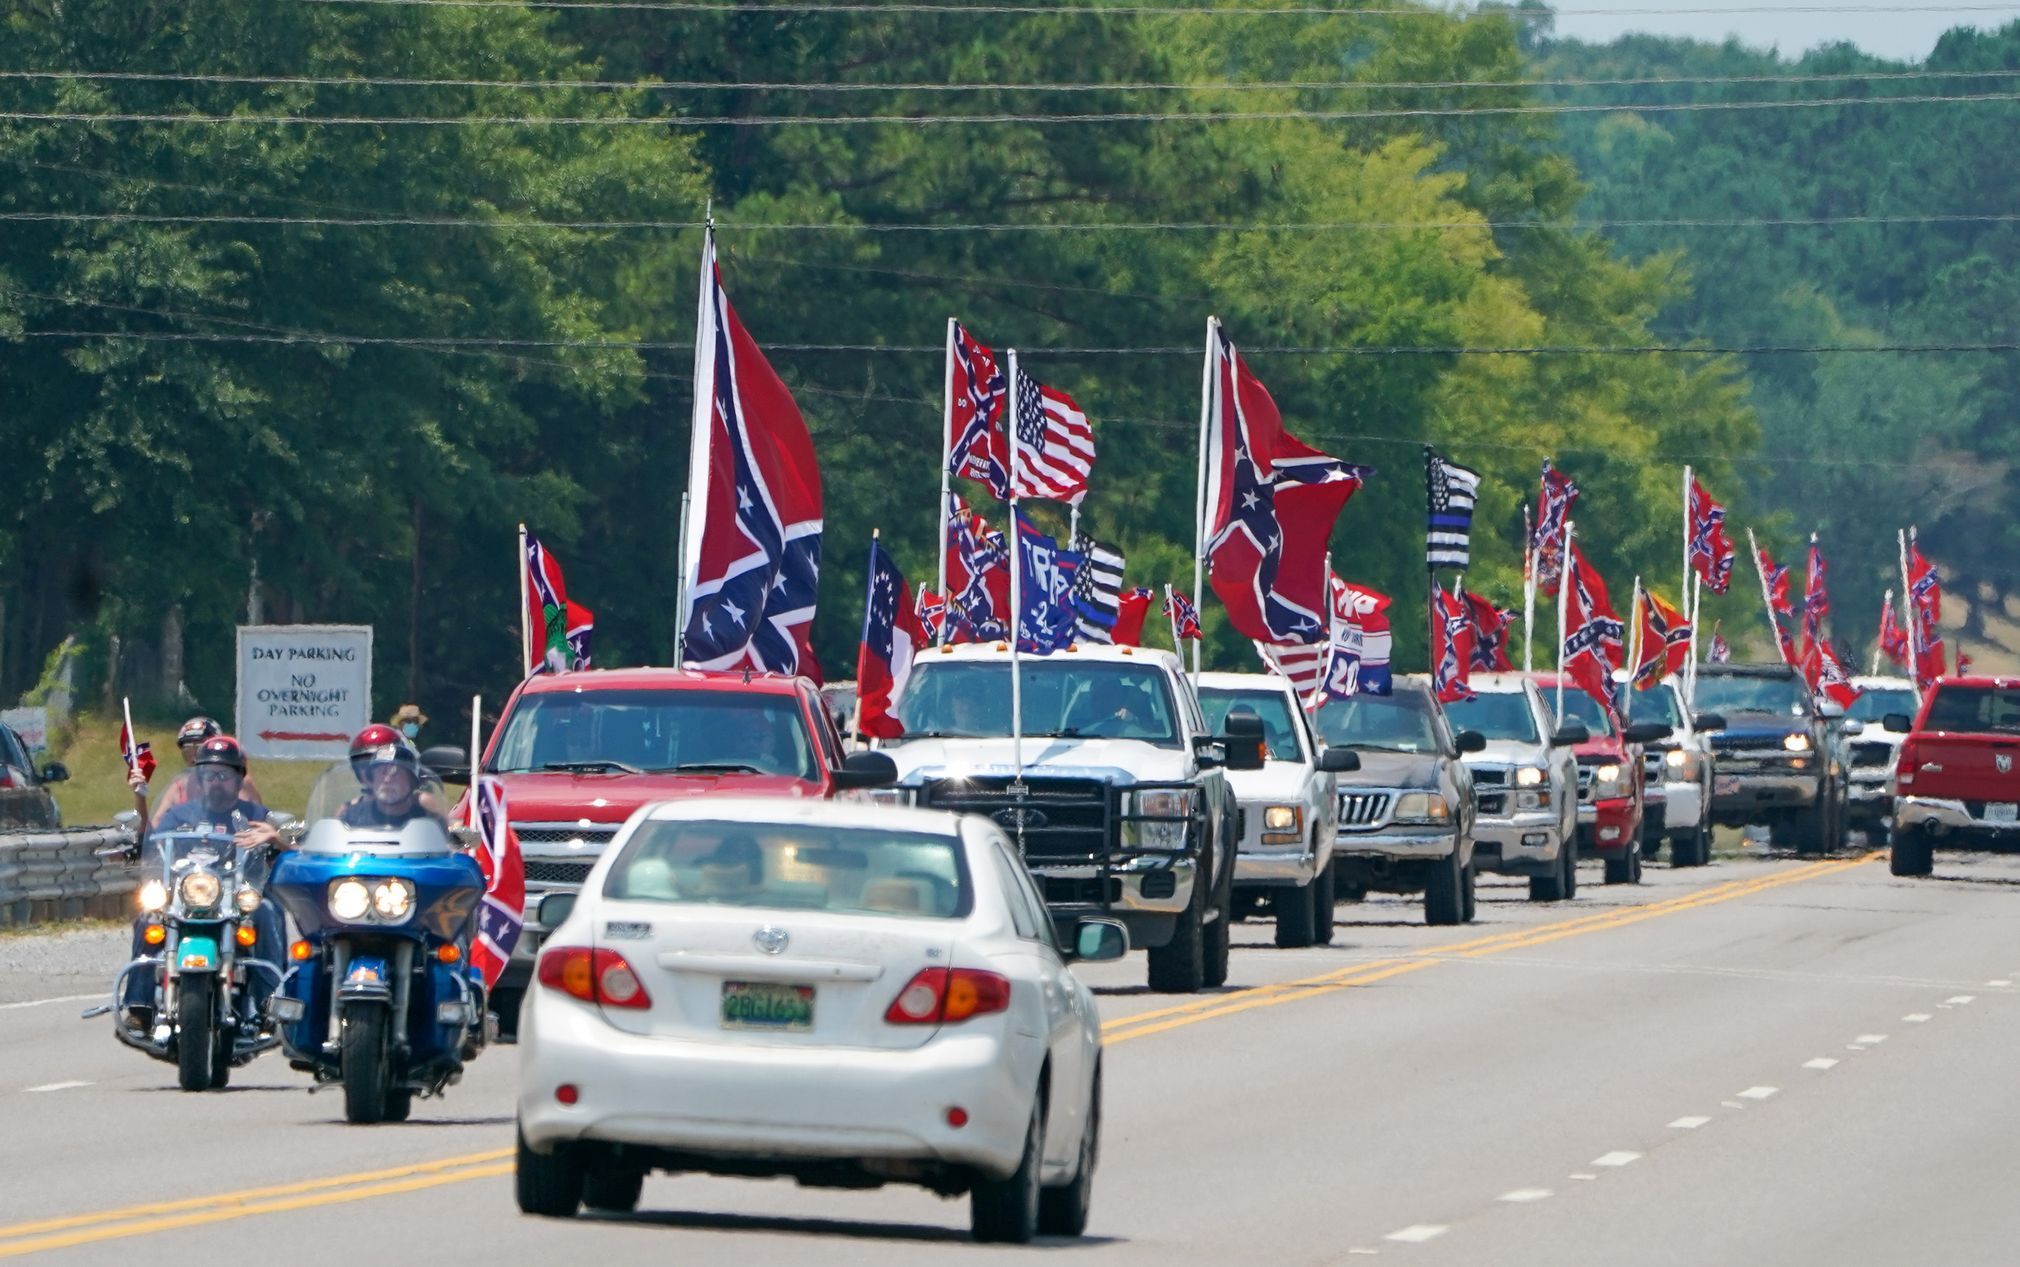 Protest fanoušků NASCAR proti zákazu konfederační vlajky v blízkosti oválu Talladega Superspeedway